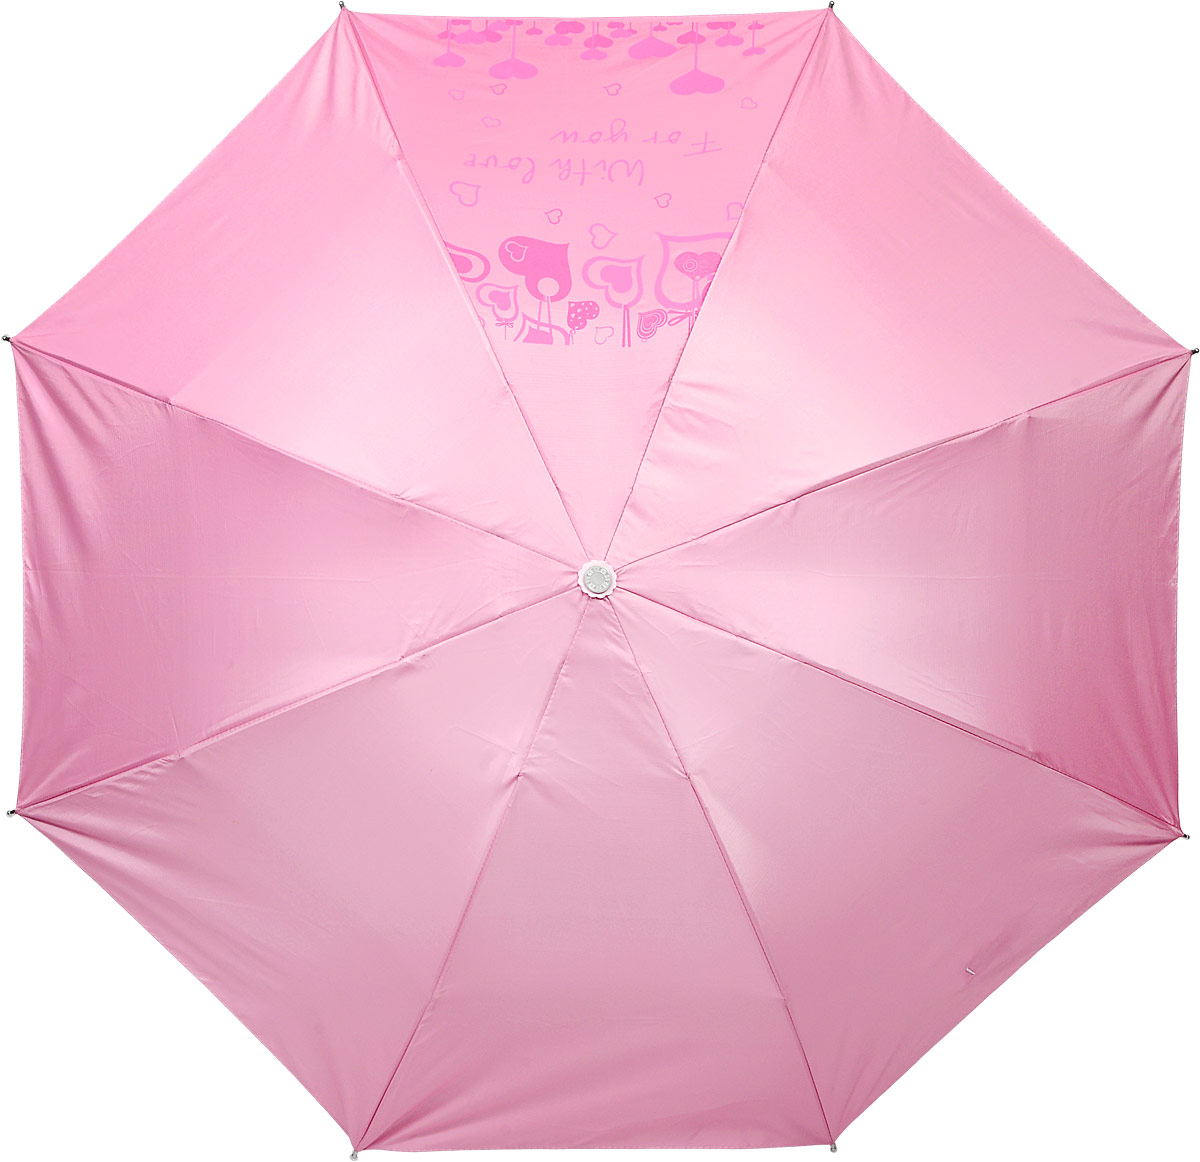 Зонт женский Эврика, механика, 2 сложения, цвет: розовый, серебристый. 91542